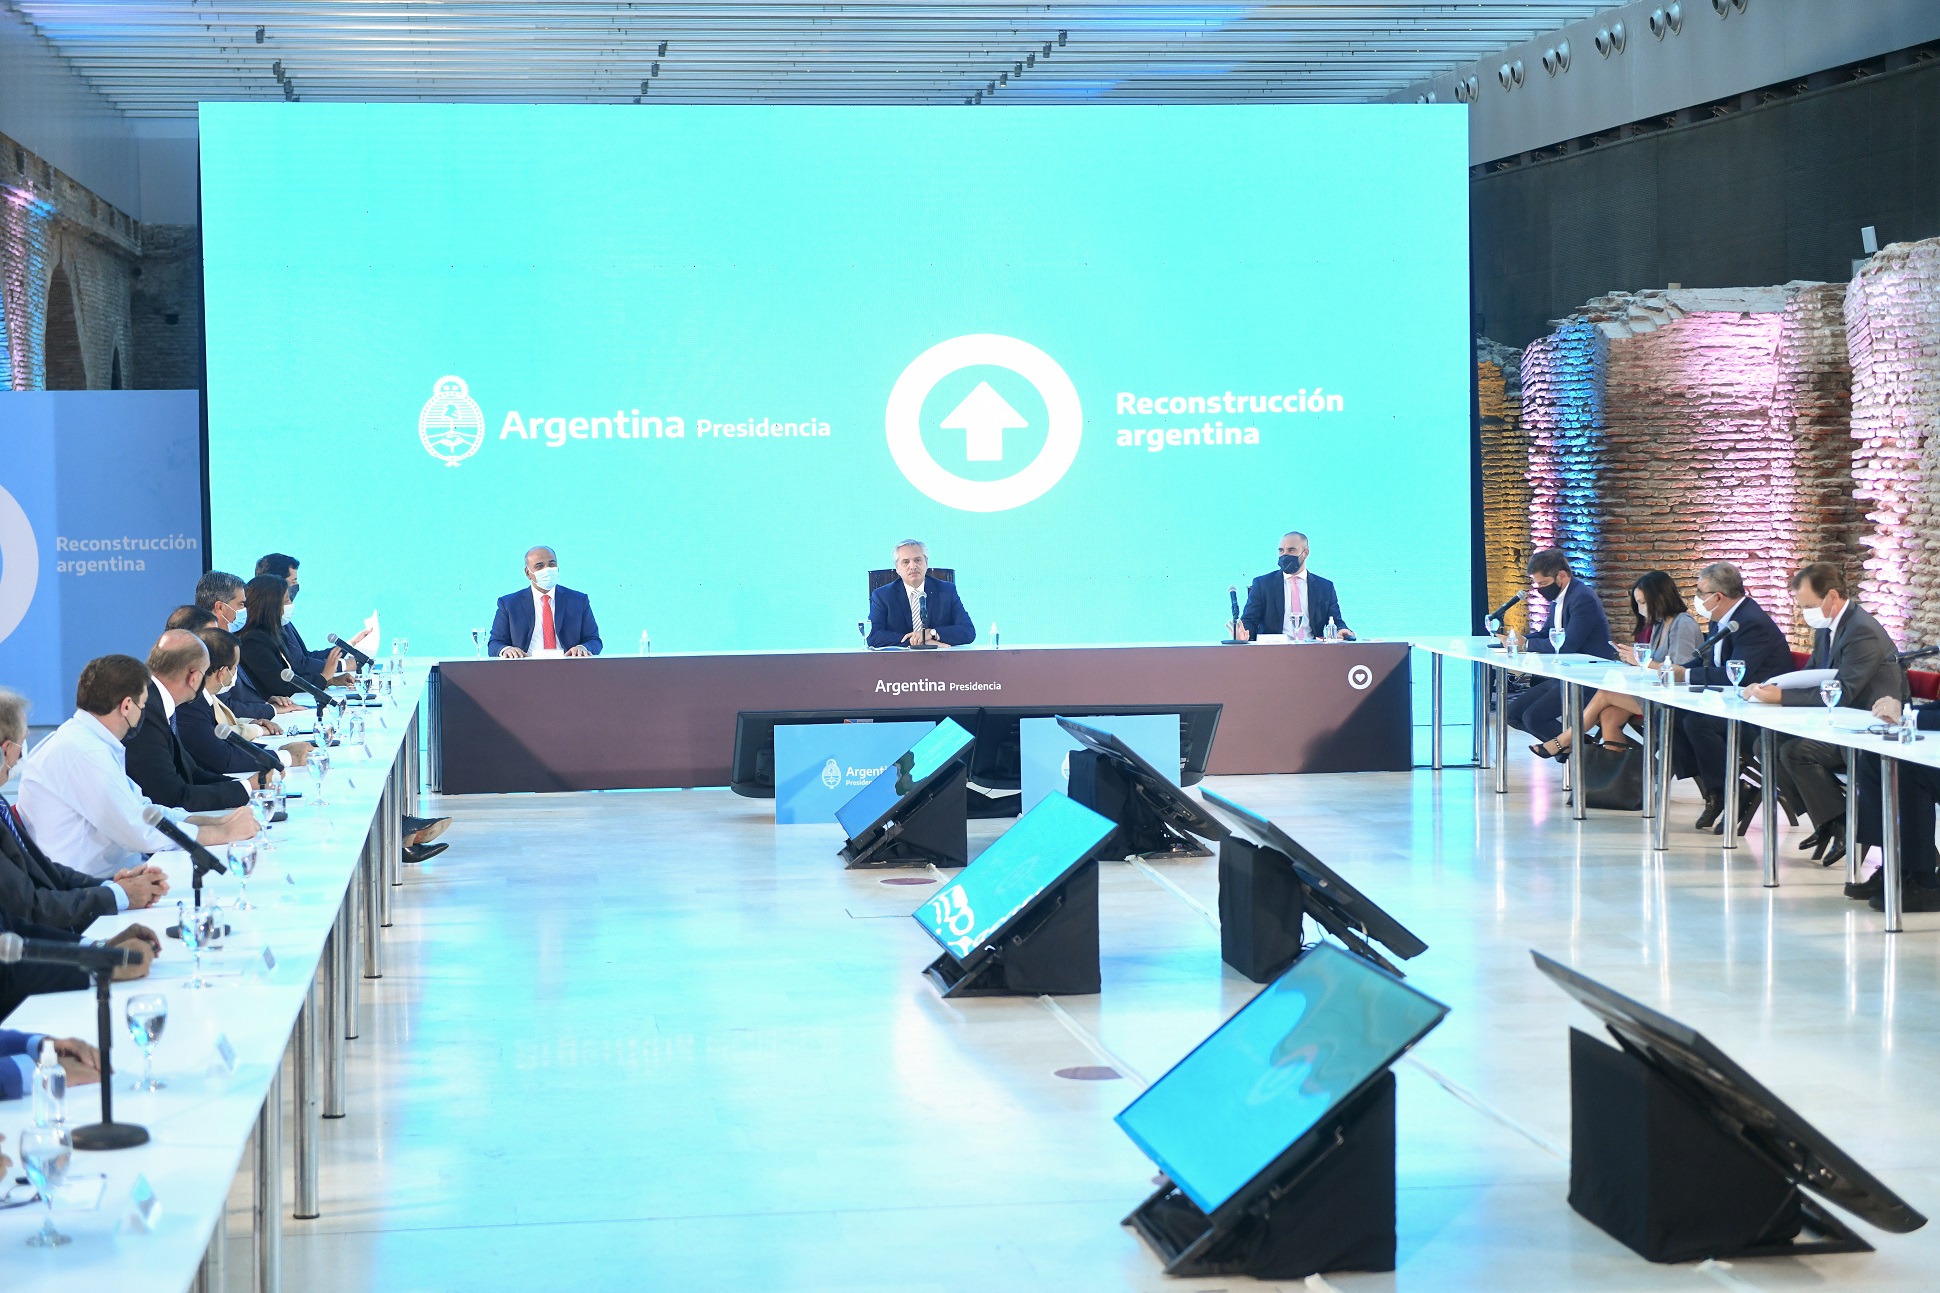 Alberto Fernández: “La palabra ajuste está desterrada de la discusión con el FMI, para nosotros el secreto es crecer”